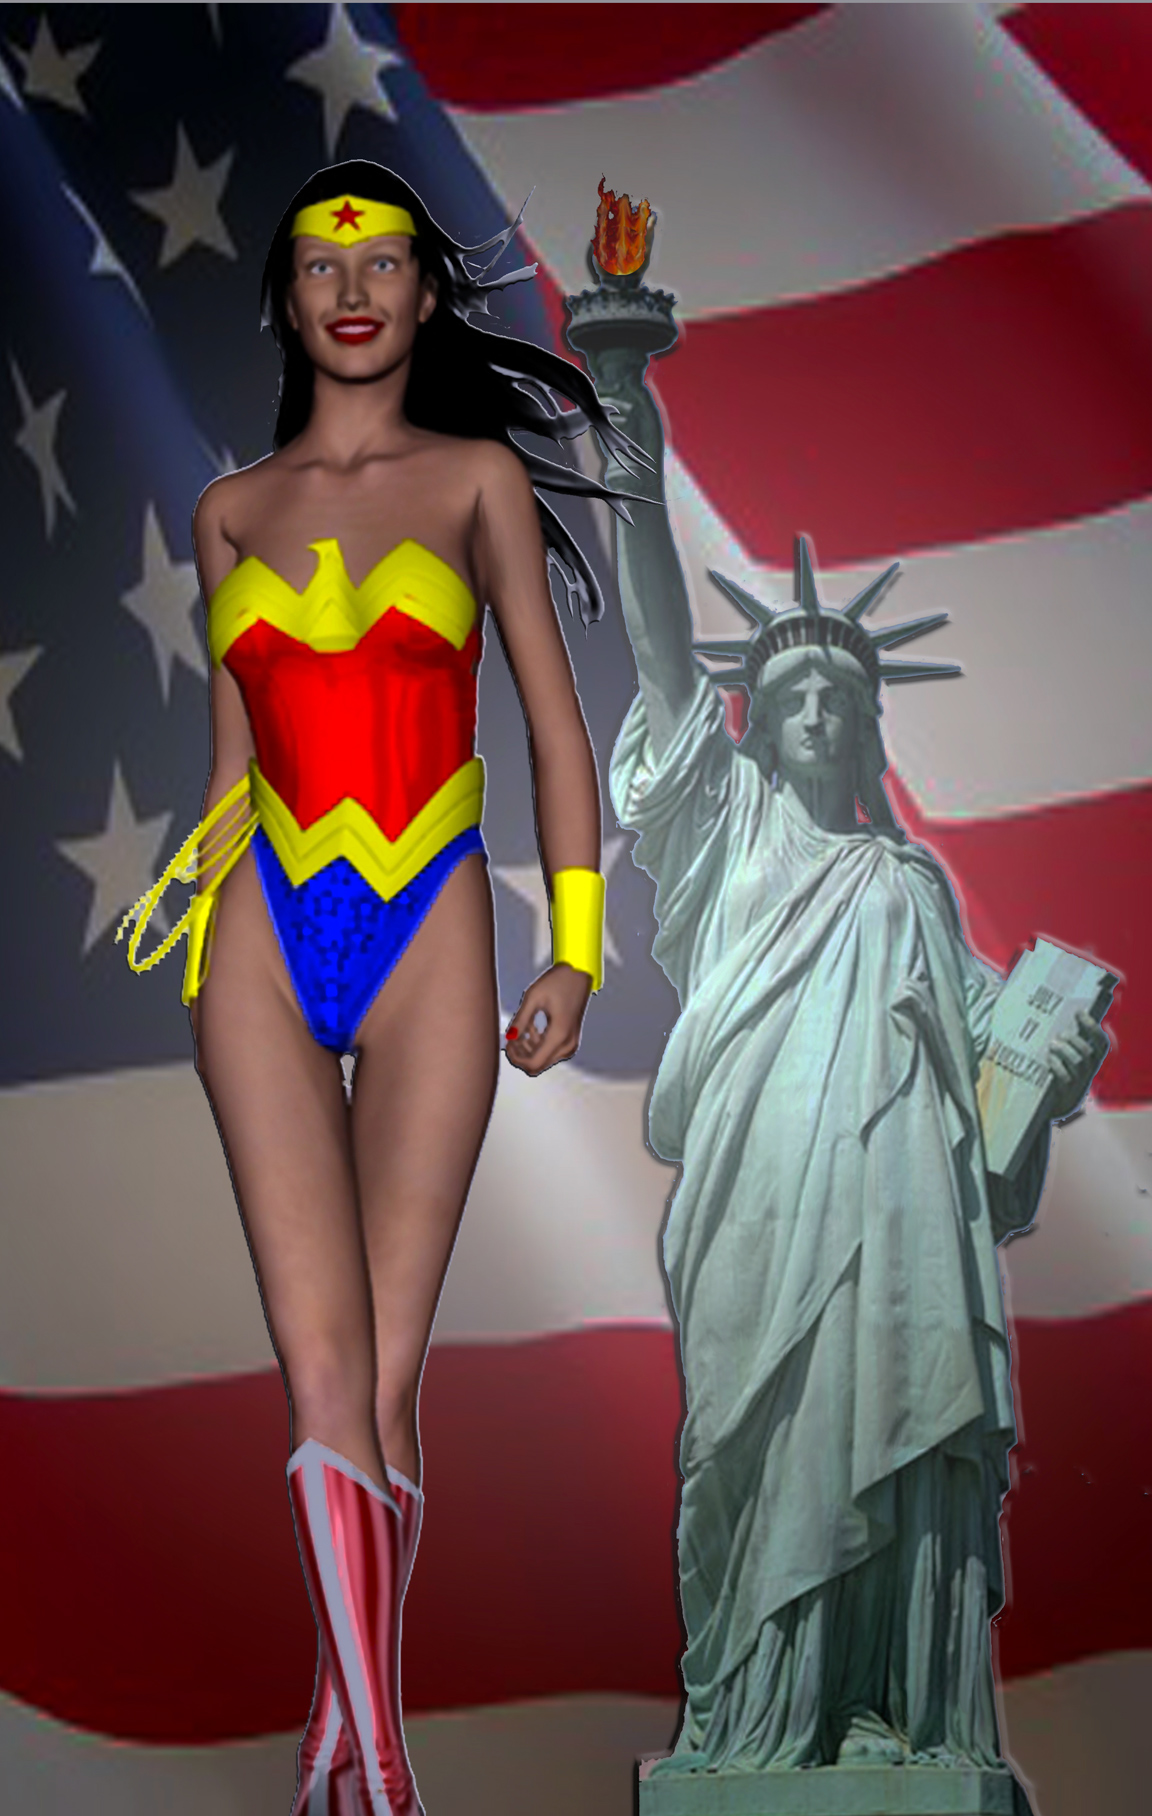 Wonder Woman and Lady Liberty